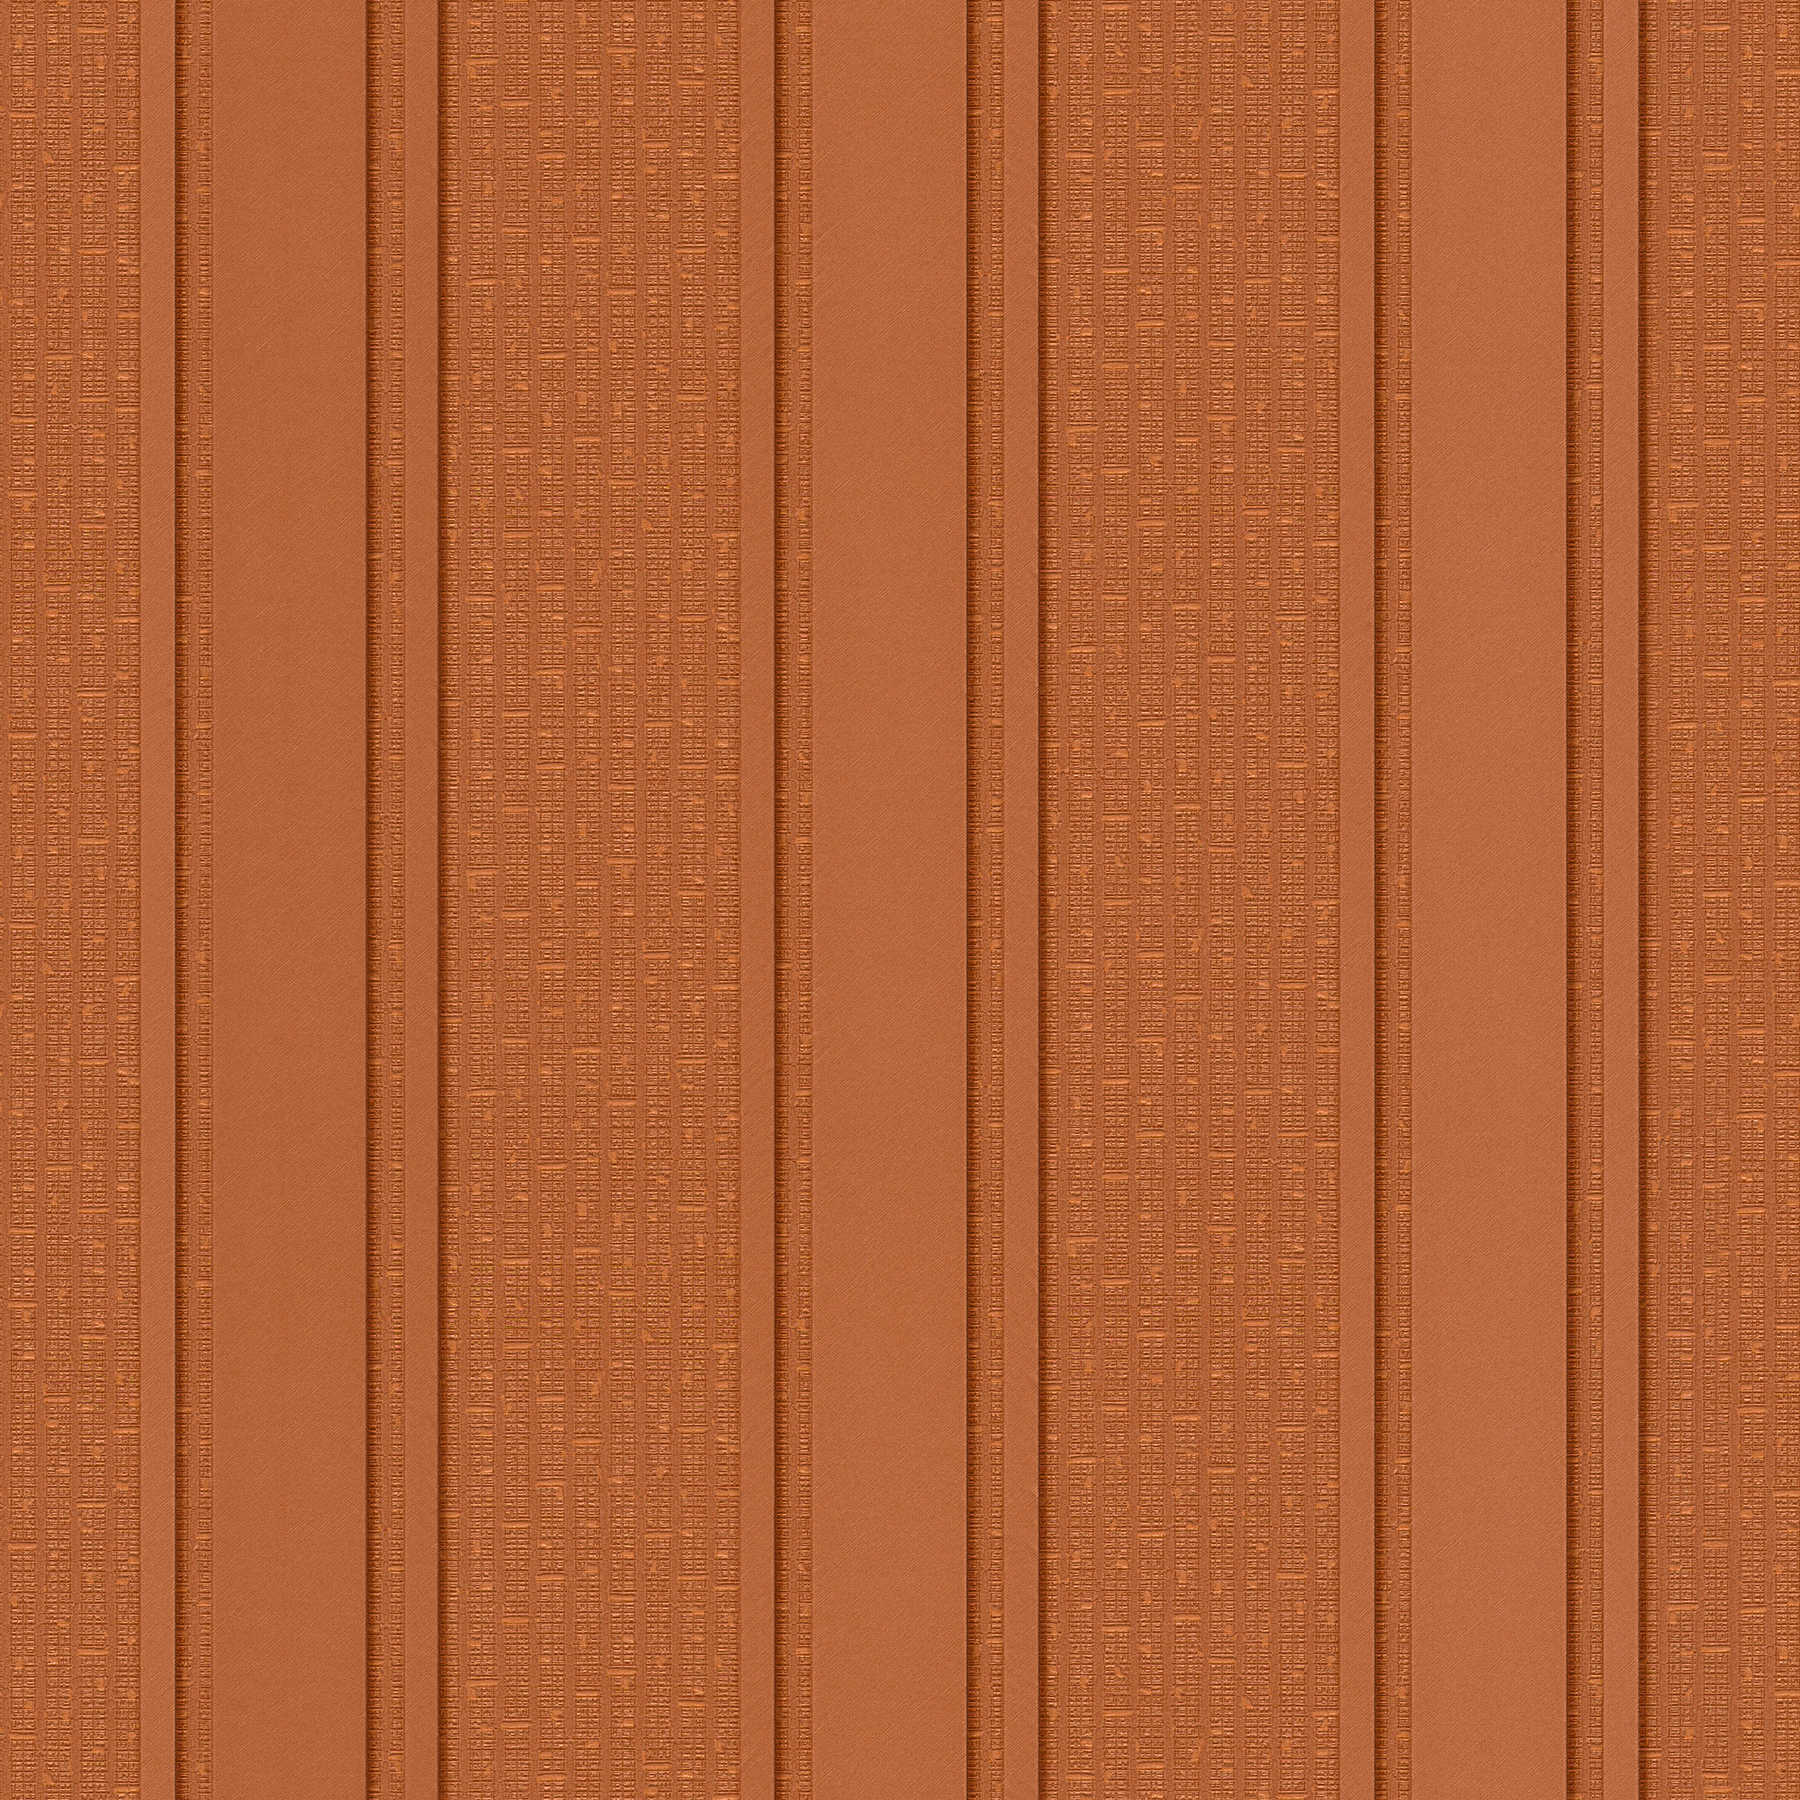 VERSACE metallic strepen & structuureffect behang - metallic, oranje
